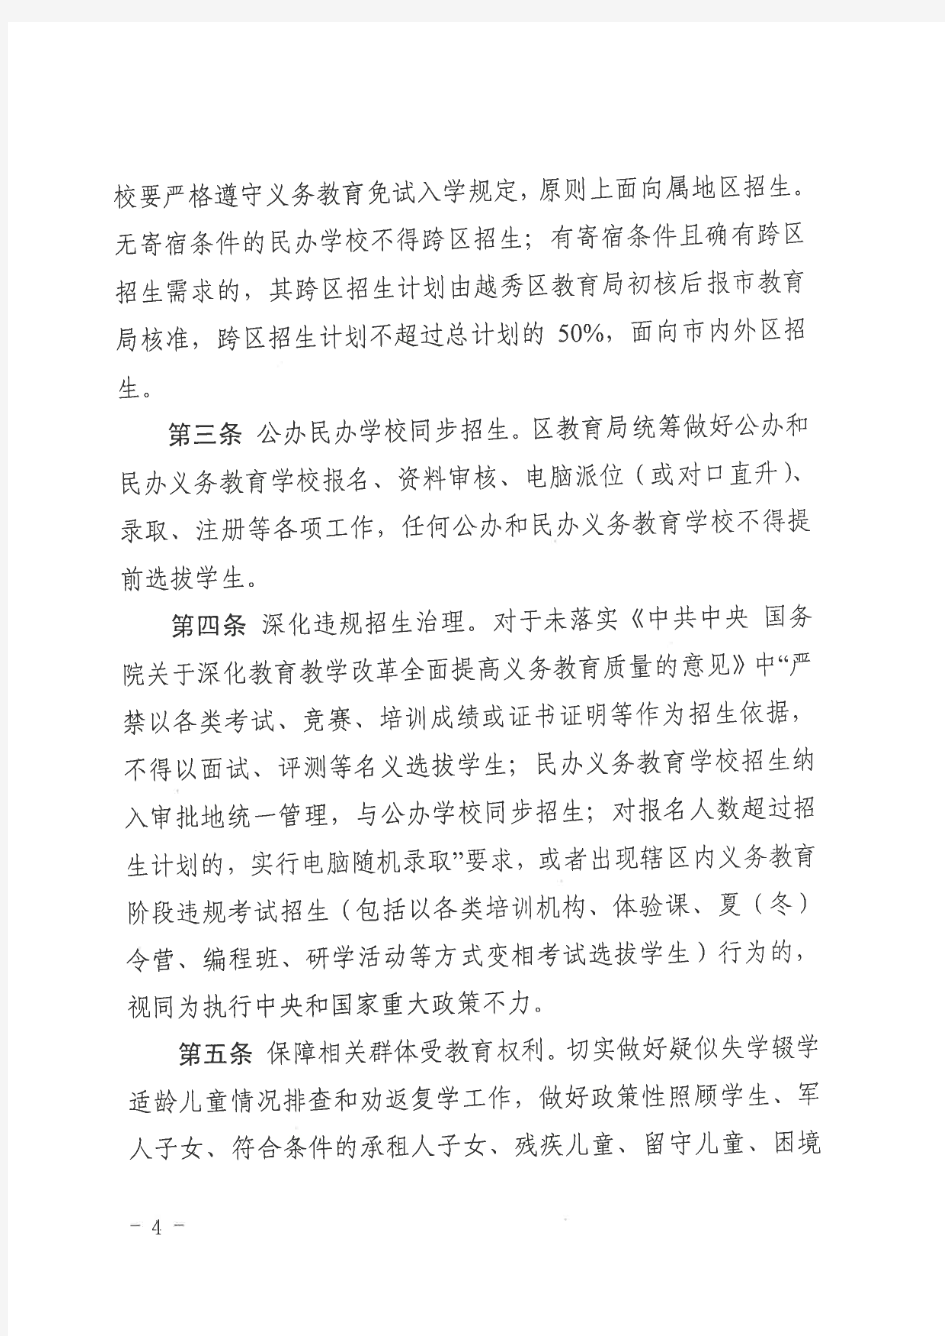 2020年广州市越秀区义务教育阶段招生工作实施细则